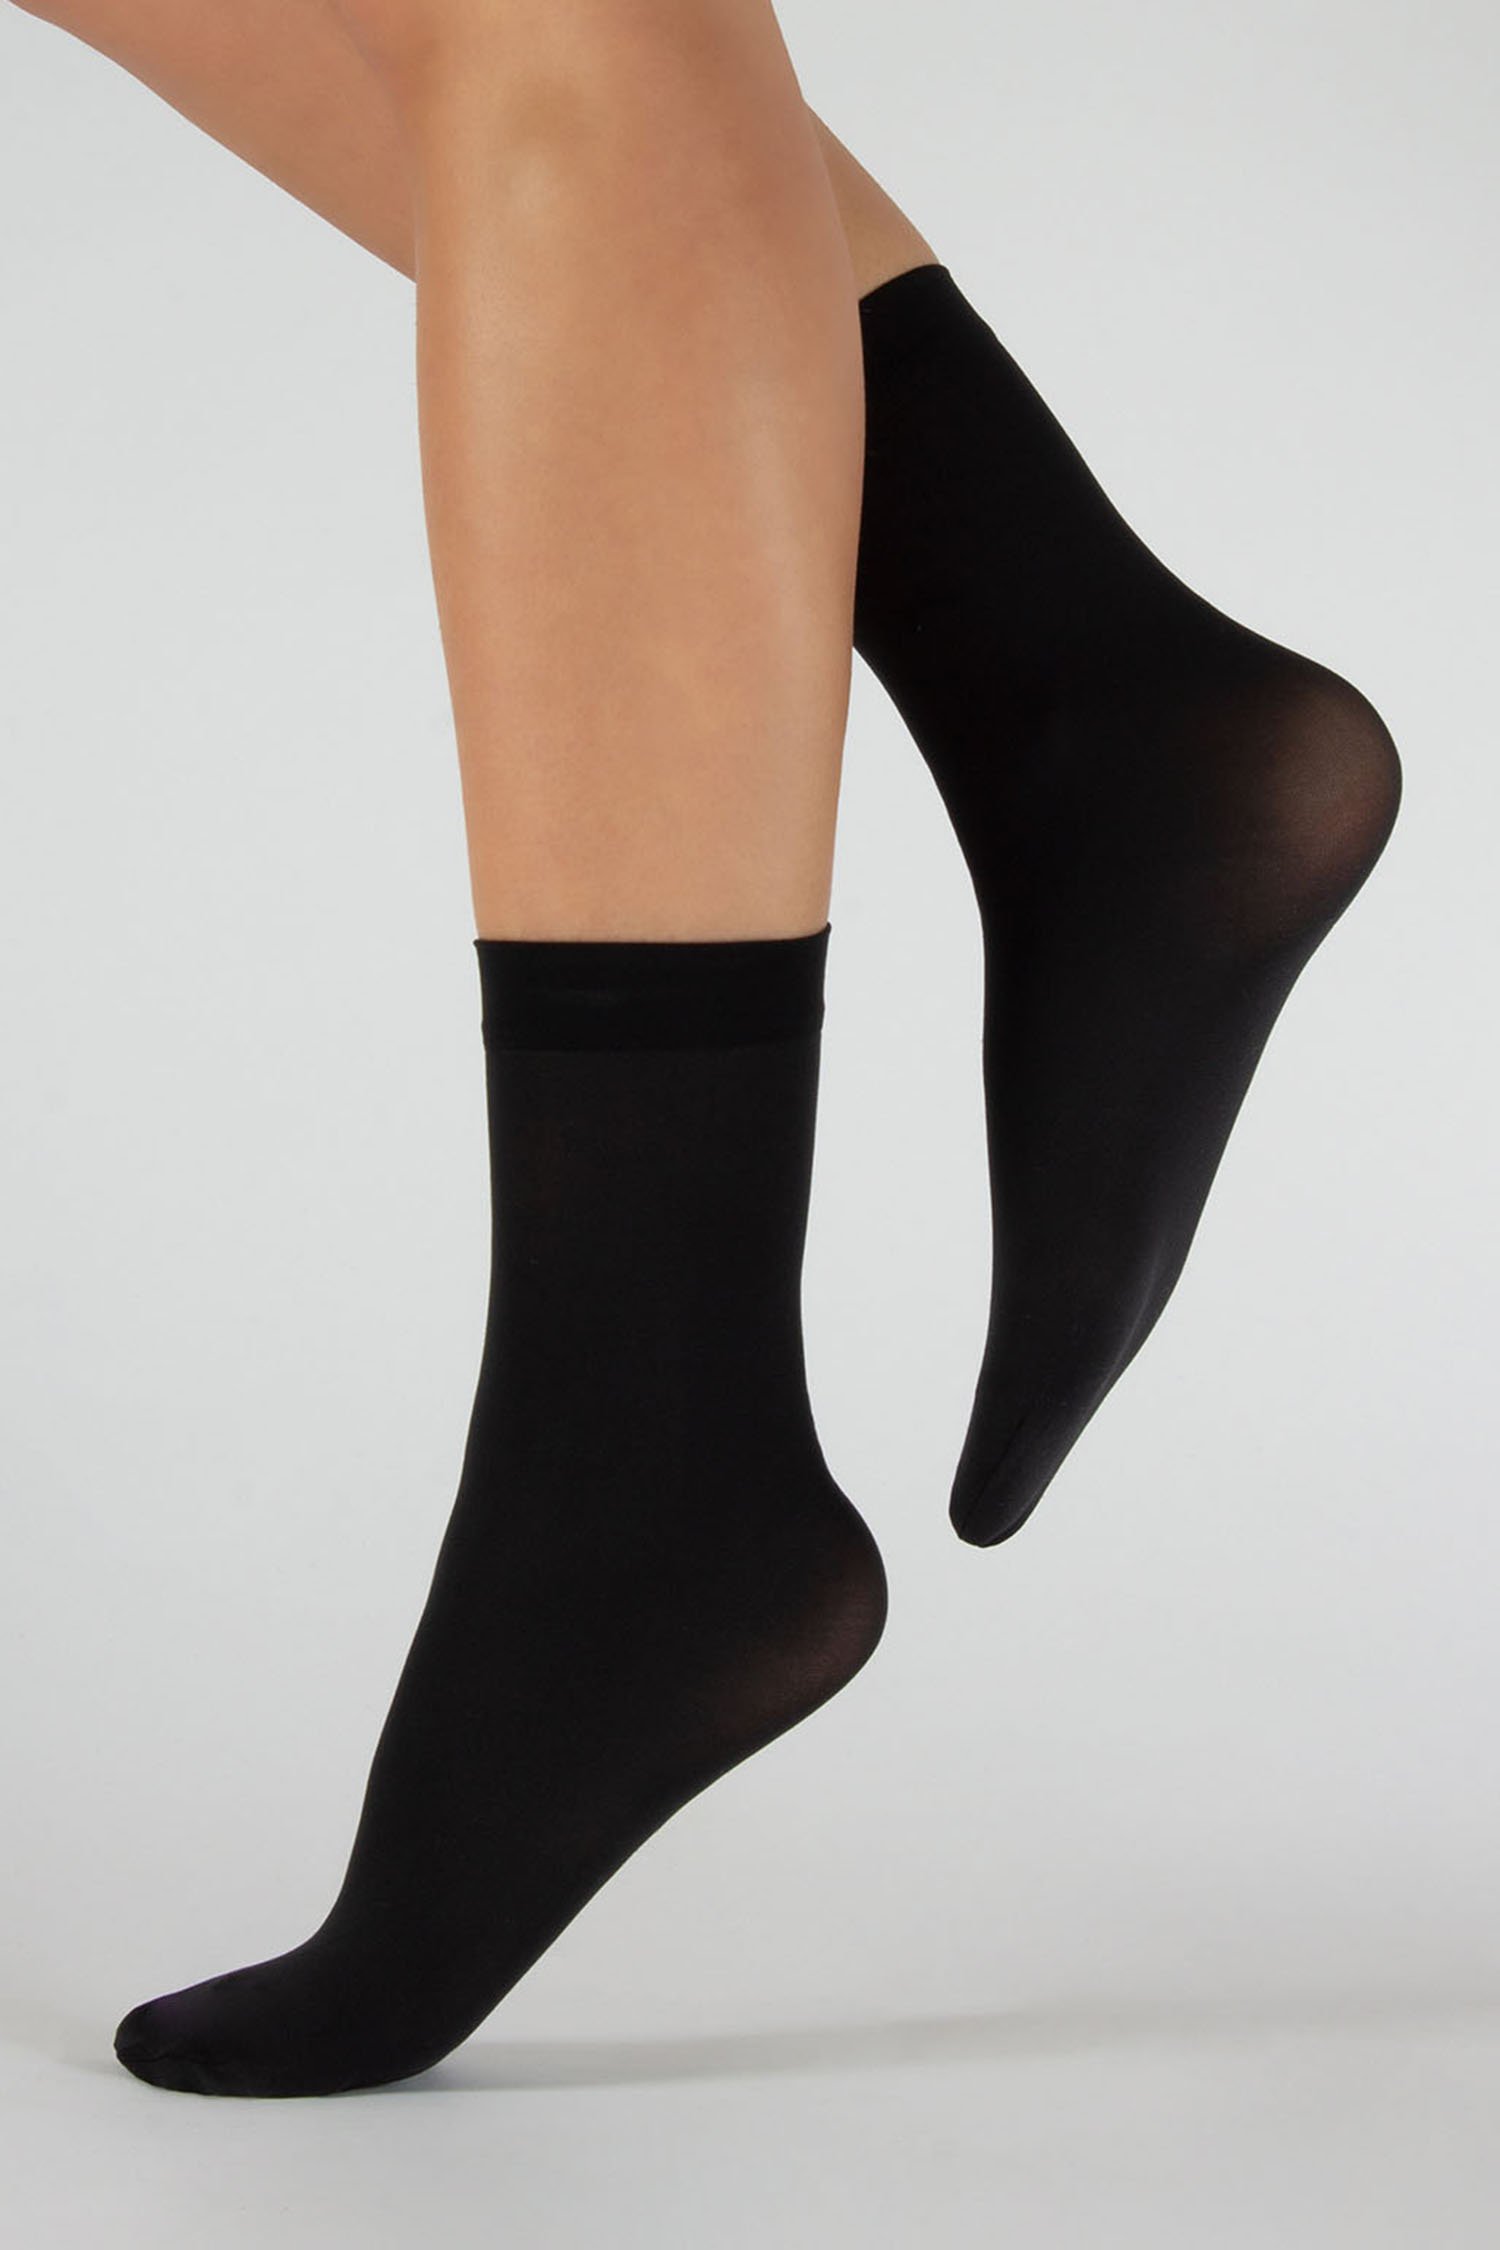 Zwarte nylon sokken - 2 paar van Cette voor Dames